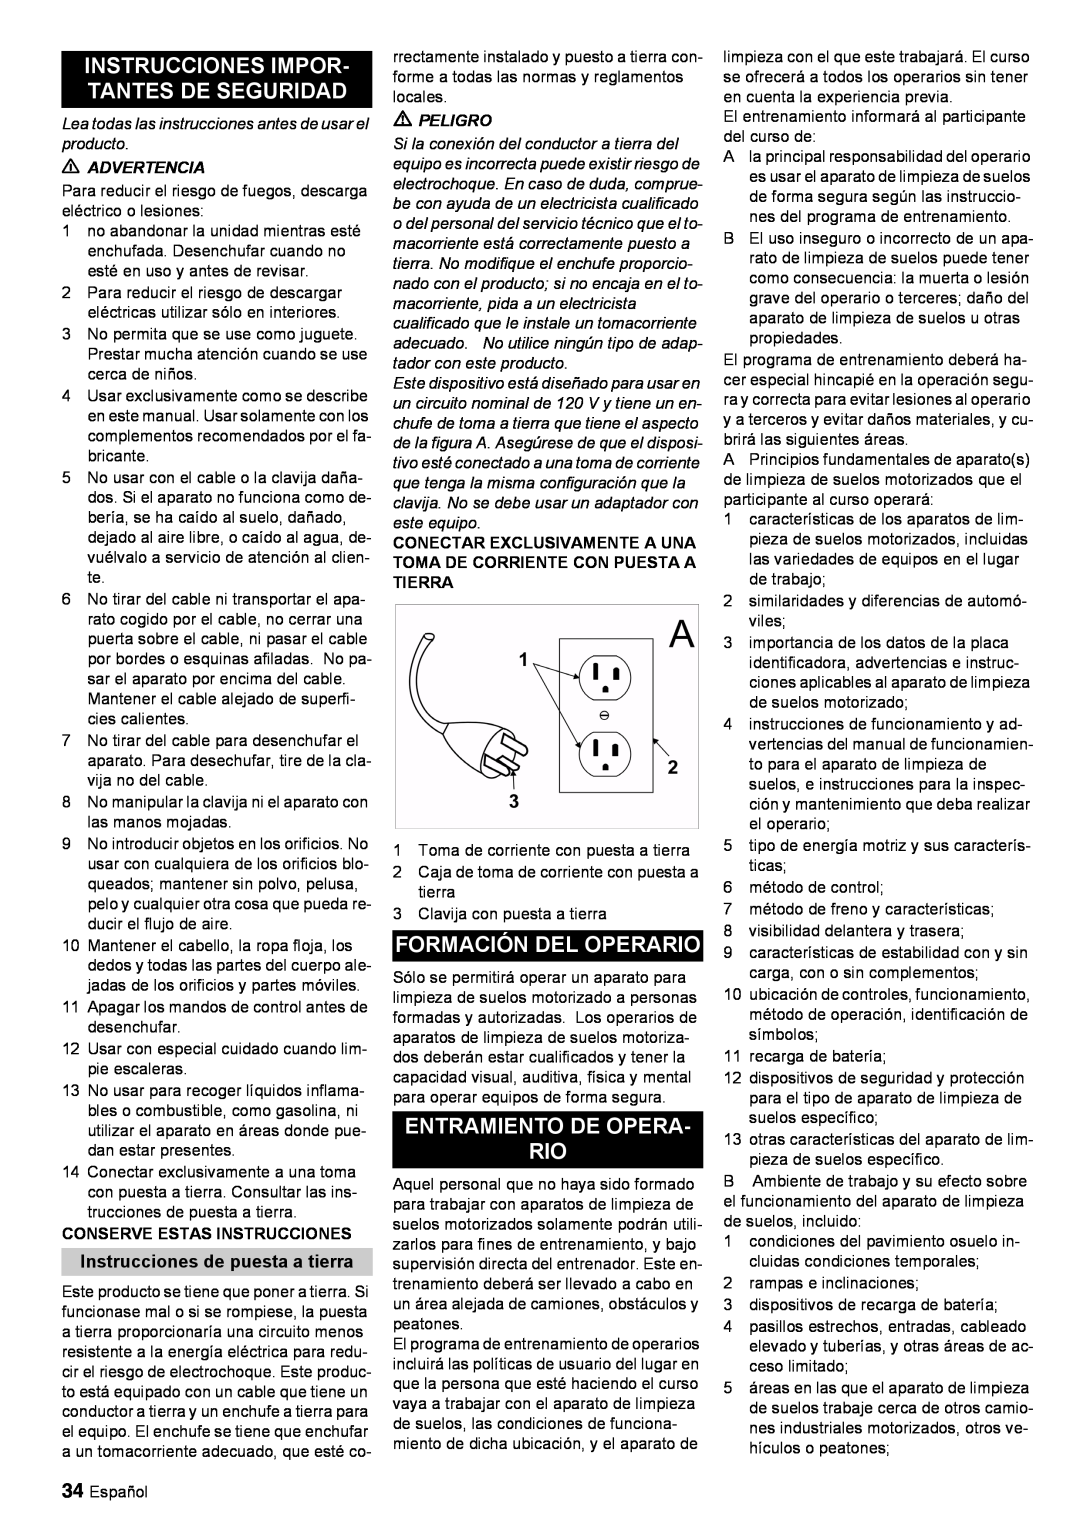 Windsor 30 SP manual Instrucciones Impor- Tantes De Seguridad, Formación Del Operario, Entramiento De Opera Rio 